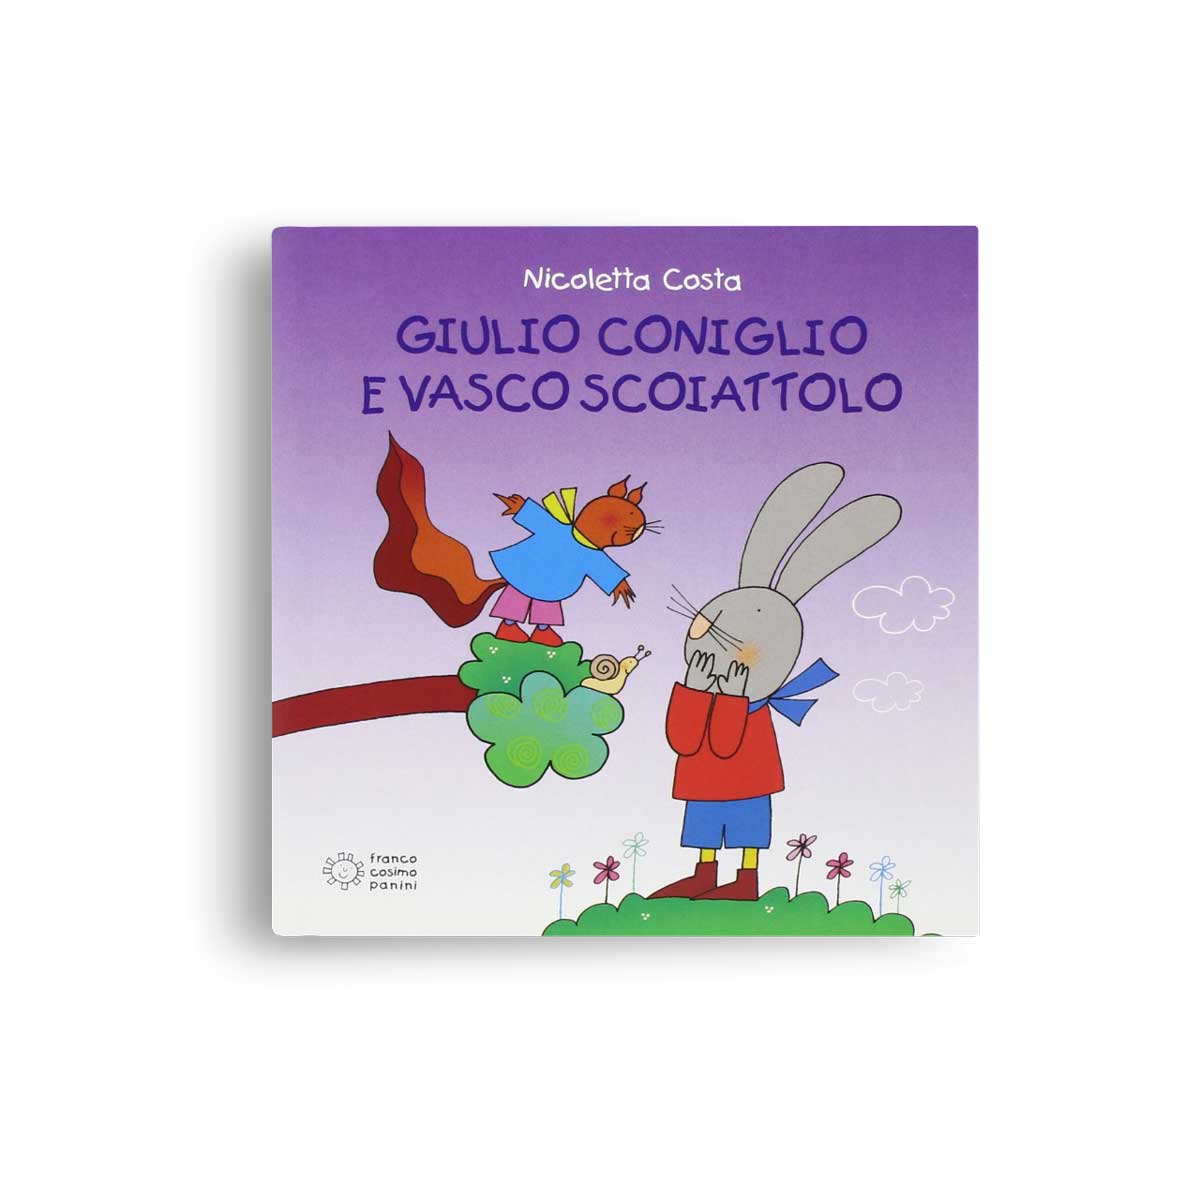 Nicoletta Costa Giulio Coniglio e Vasco Scoiattolo